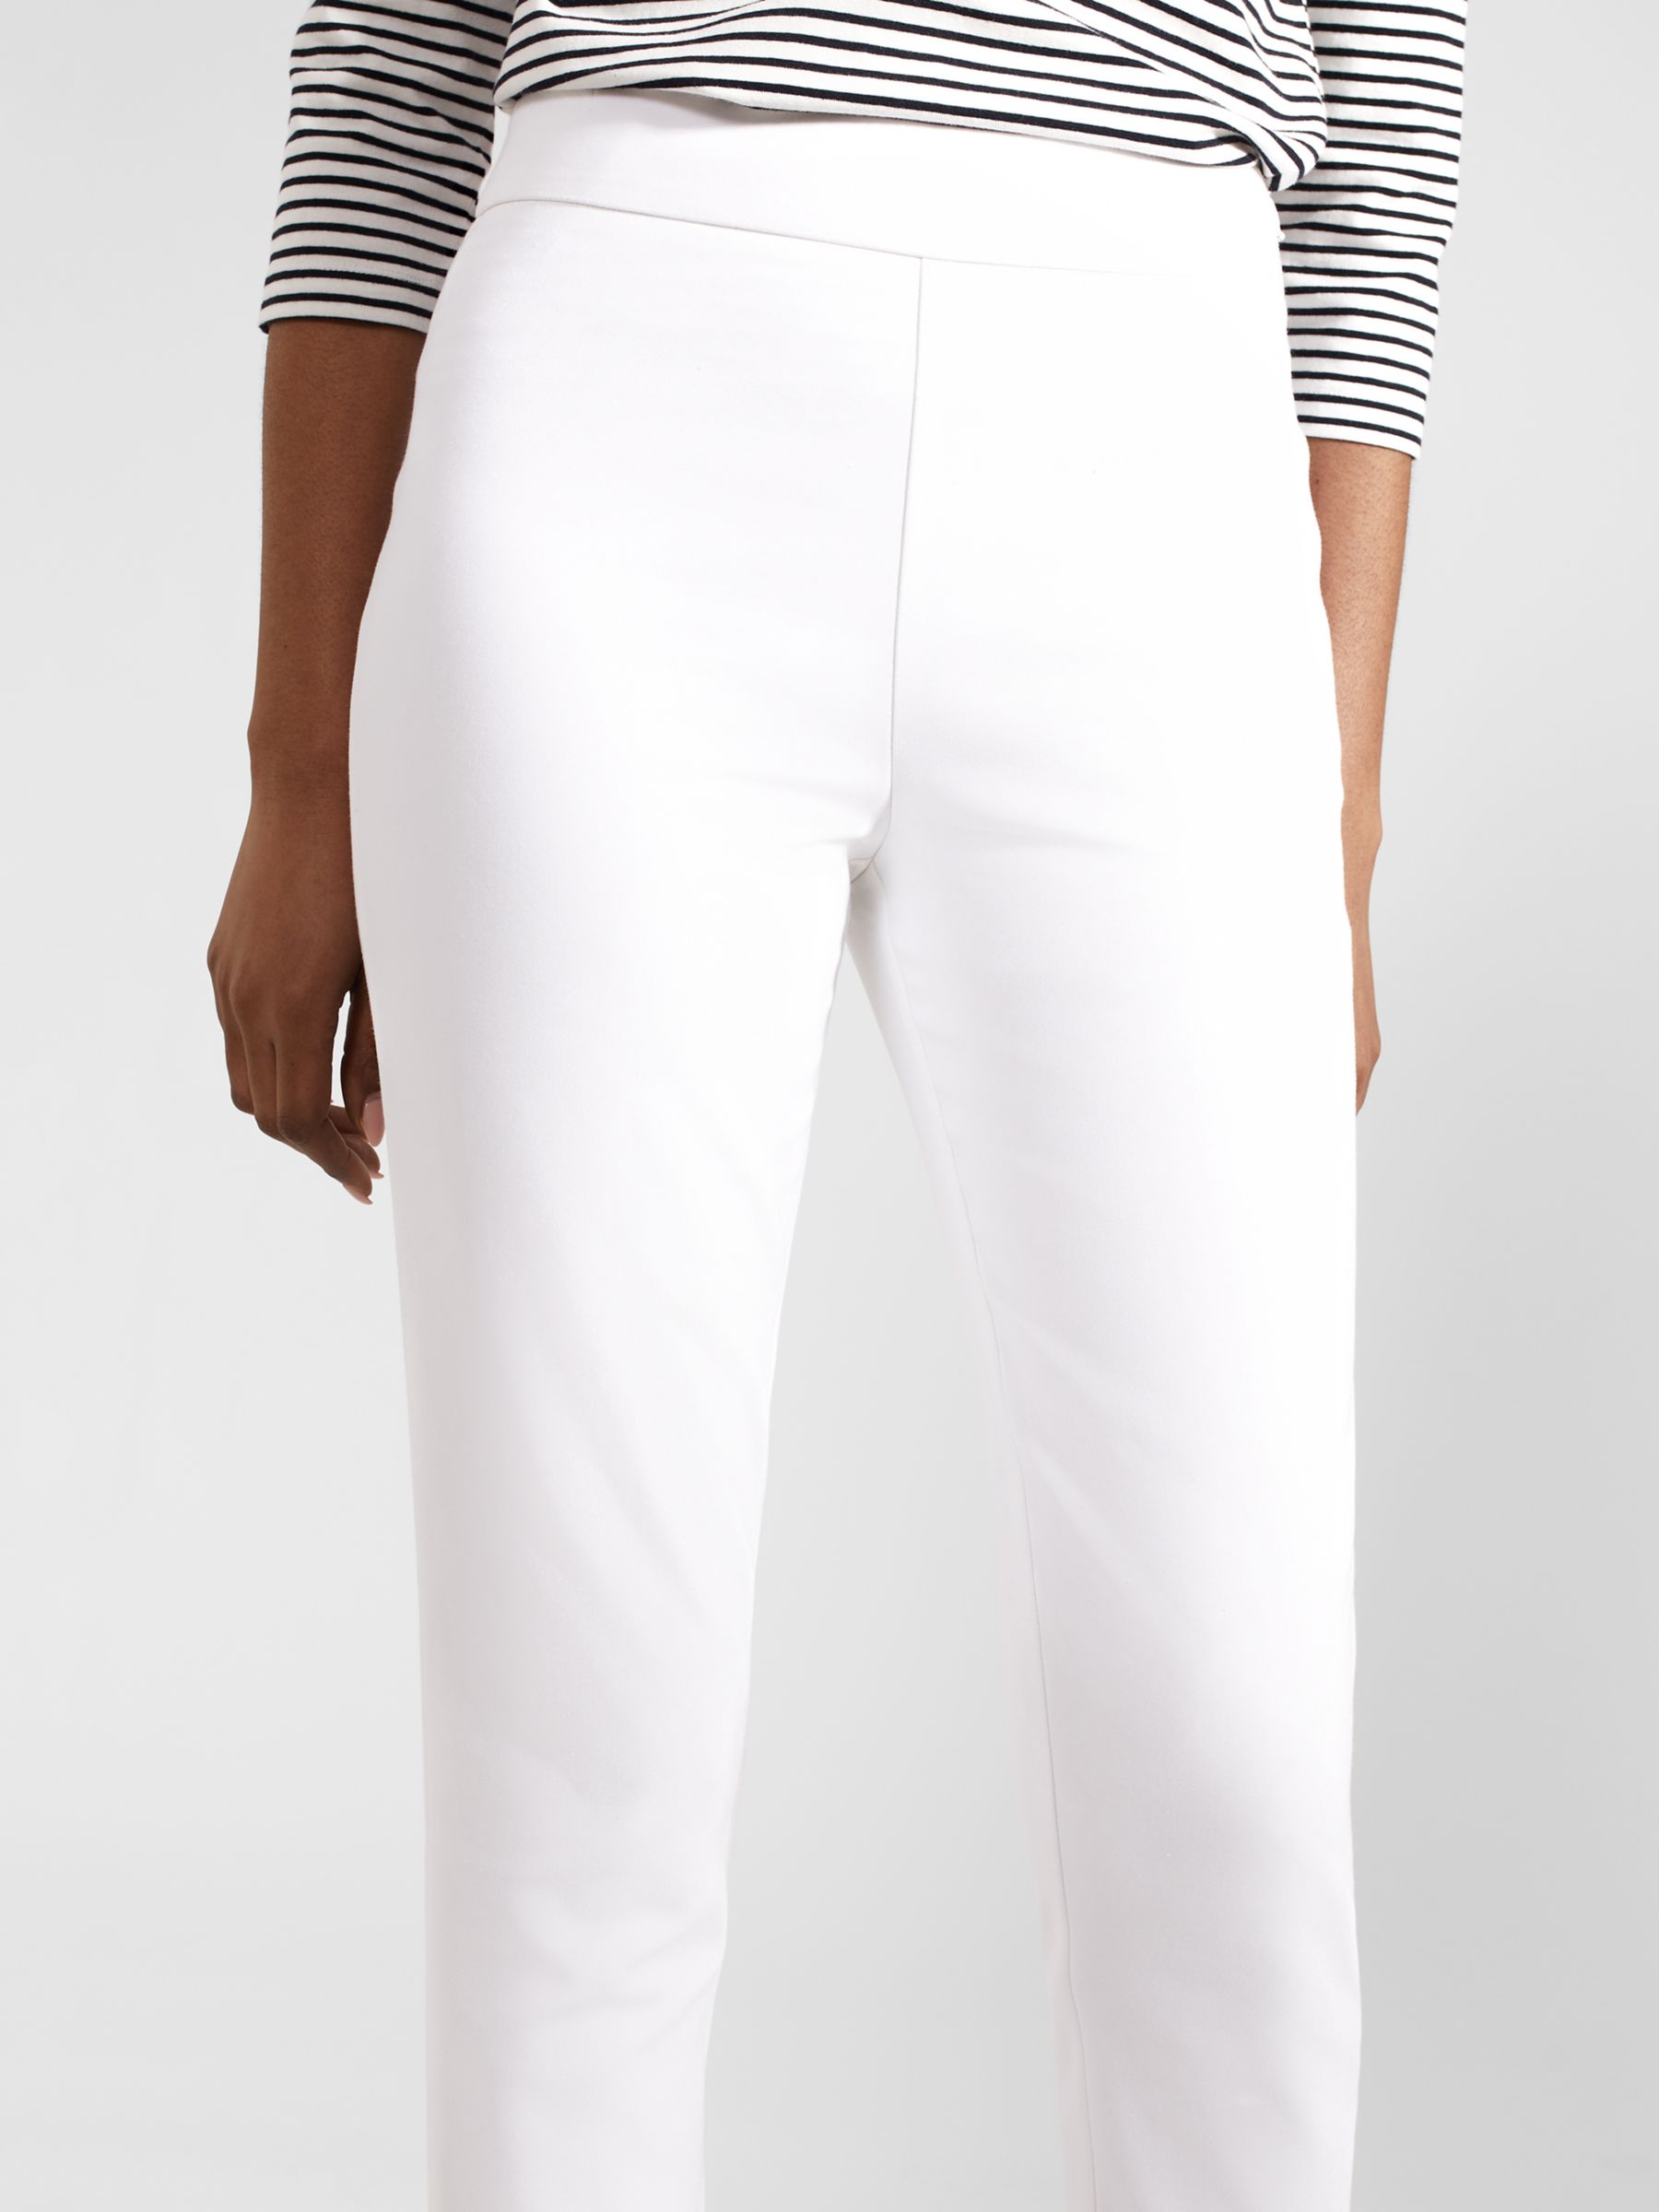 Hobbs Giselle Skinny Fit Capri Trousers, White, 10